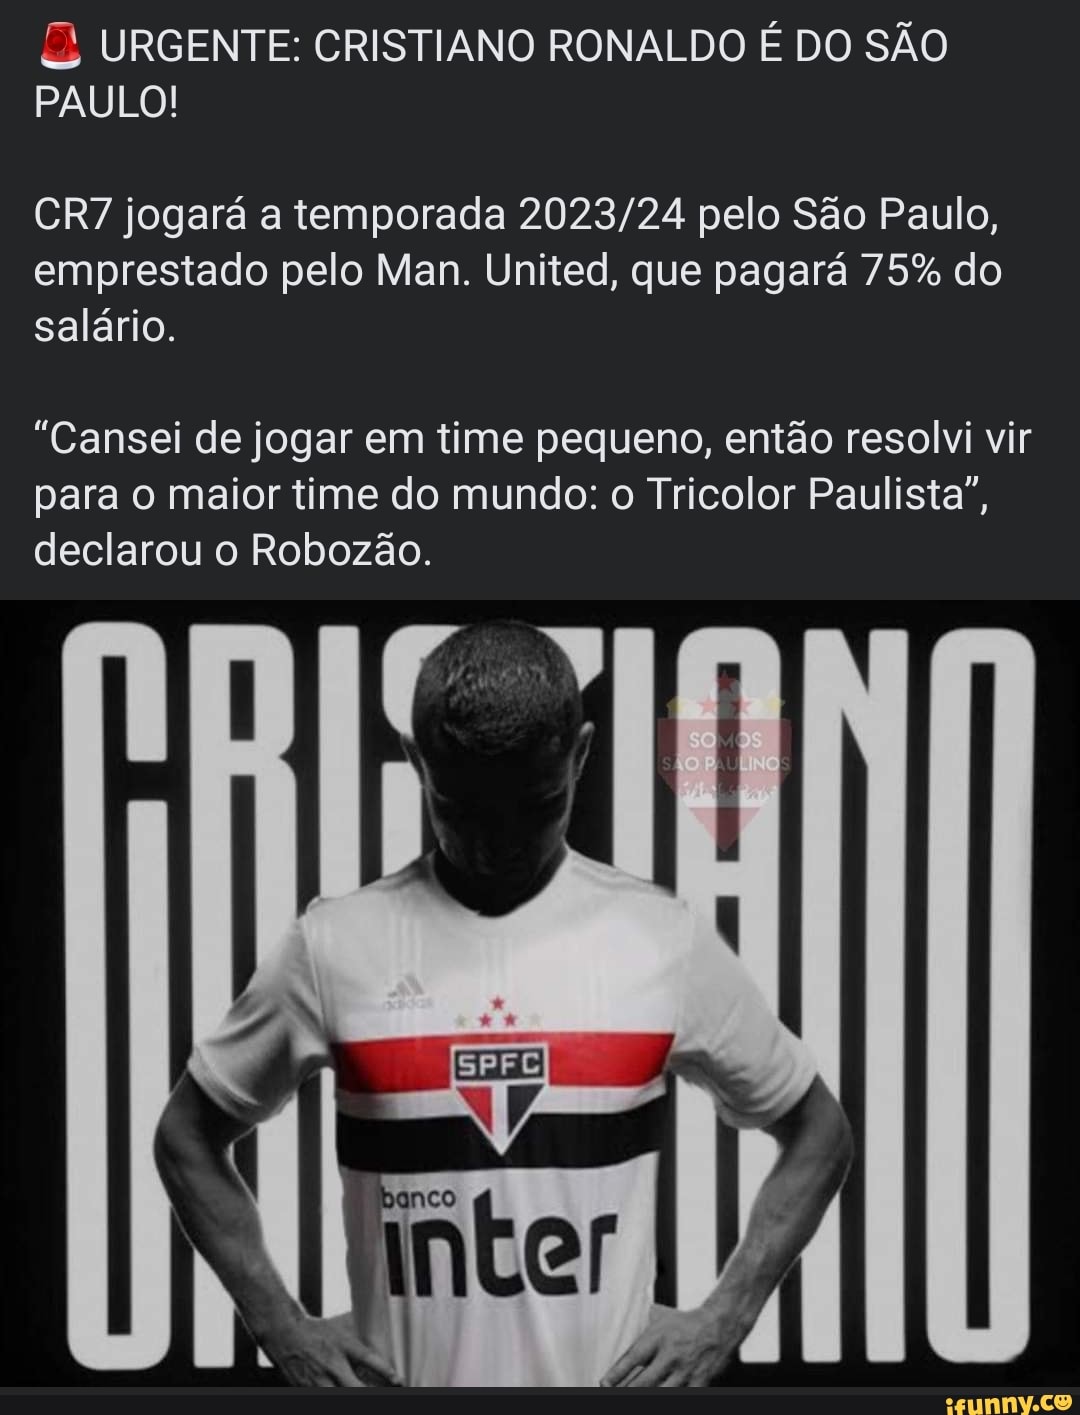 URGENTE: CRISTIANO RONALDO É DO SÃO PAULO! jogará a temporada pelo